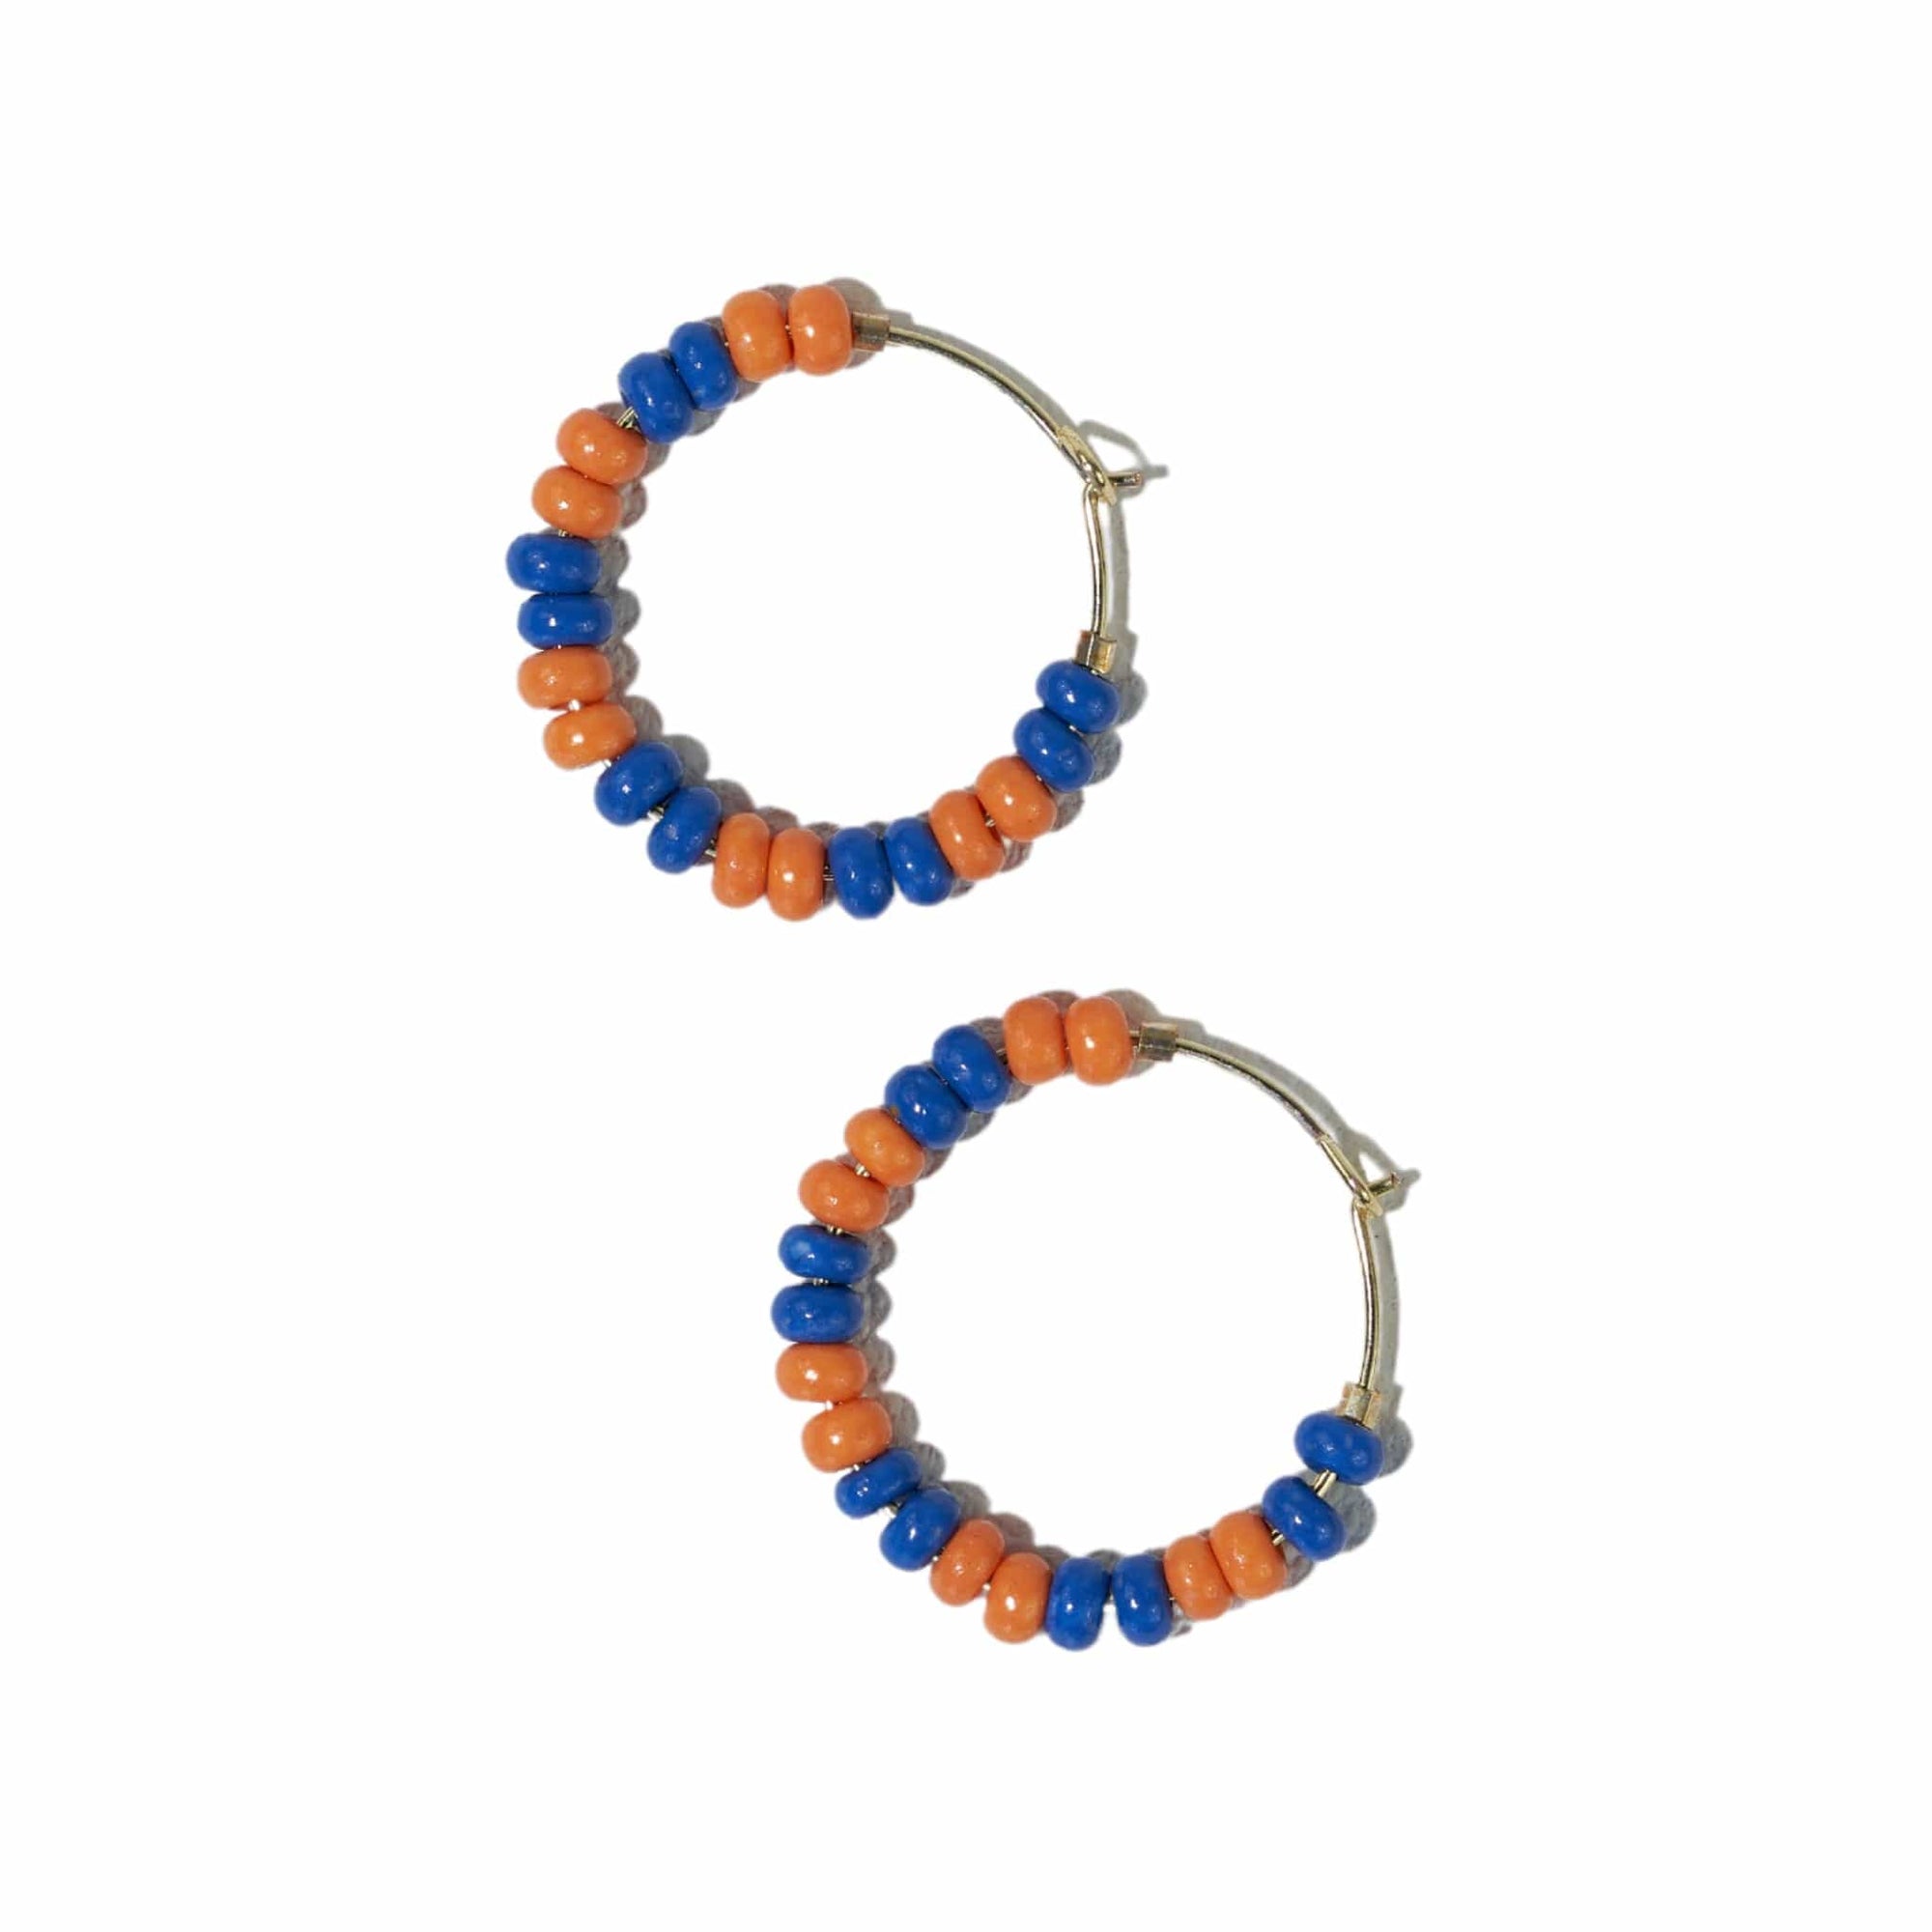 Victoria mixed seed bead hoop earrings blue + orange